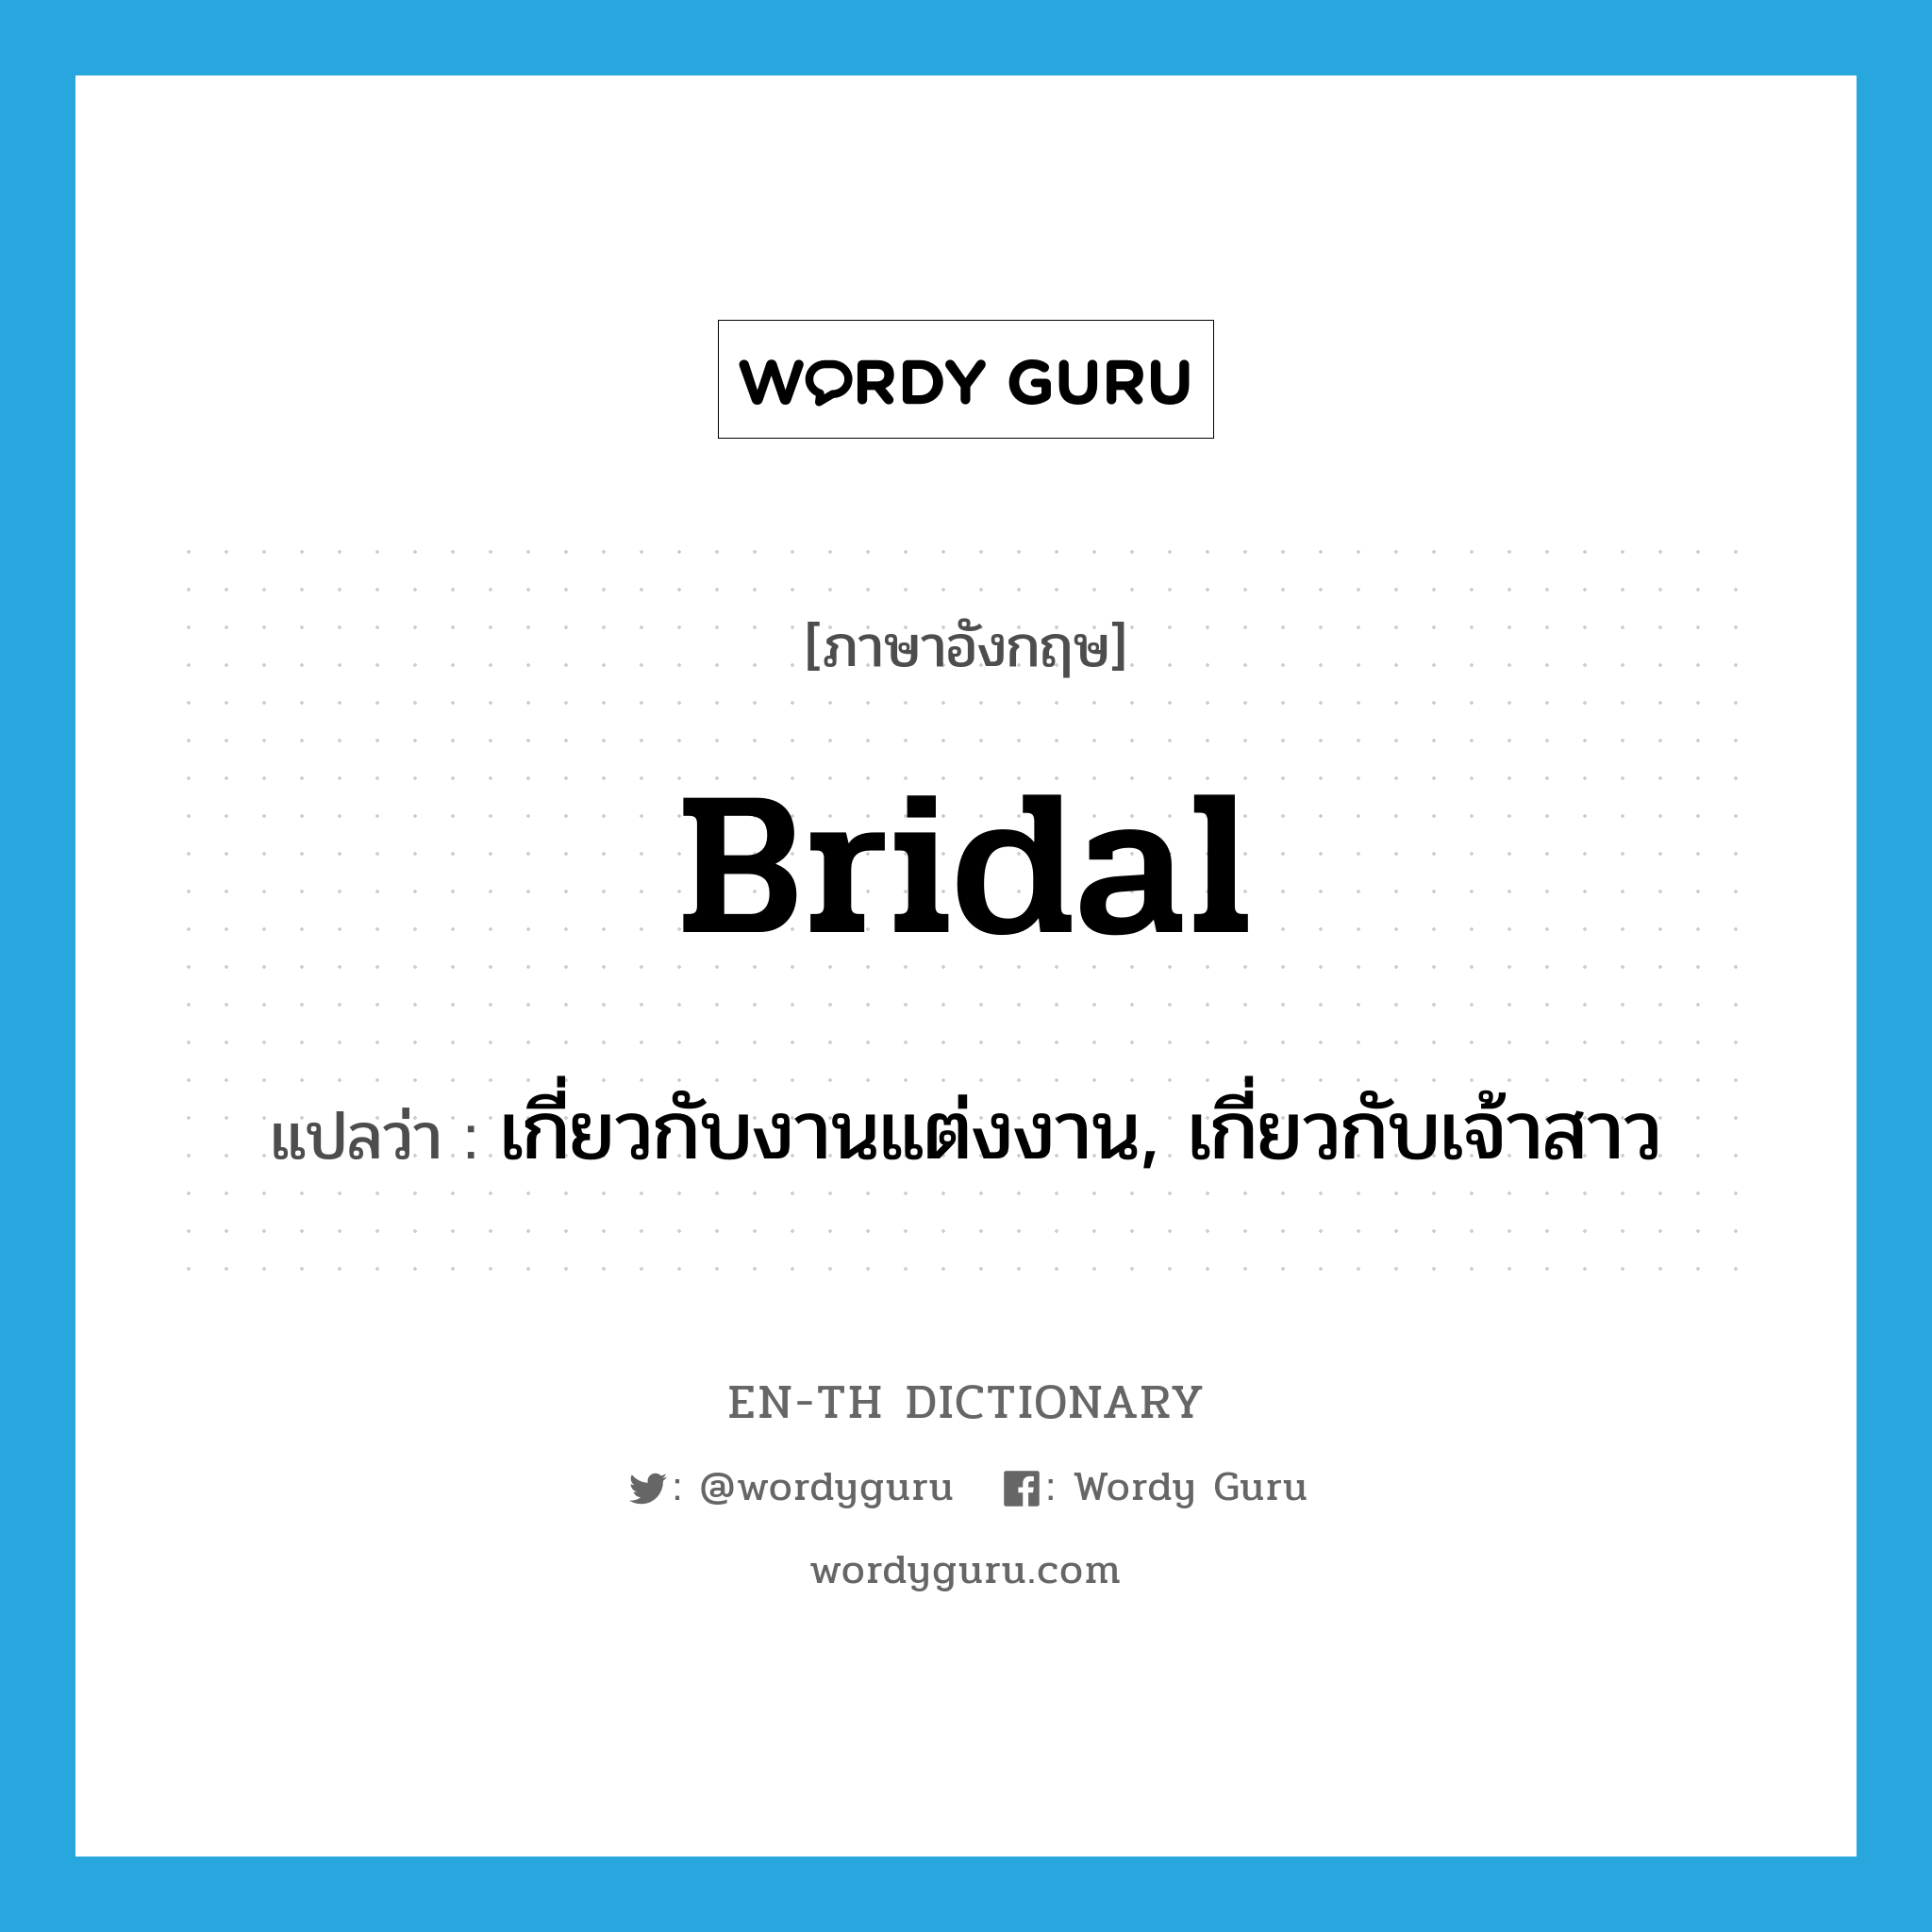 เกี่ยวกับงานแต่งงาน, เกี่ยวกับเจ้าสาว ภาษาอังกฤษ?, คำศัพท์ภาษาอังกฤษ เกี่ยวกับงานแต่งงาน, เกี่ยวกับเจ้าสาว แปลว่า bridal ประเภท ADJ หมวด ADJ